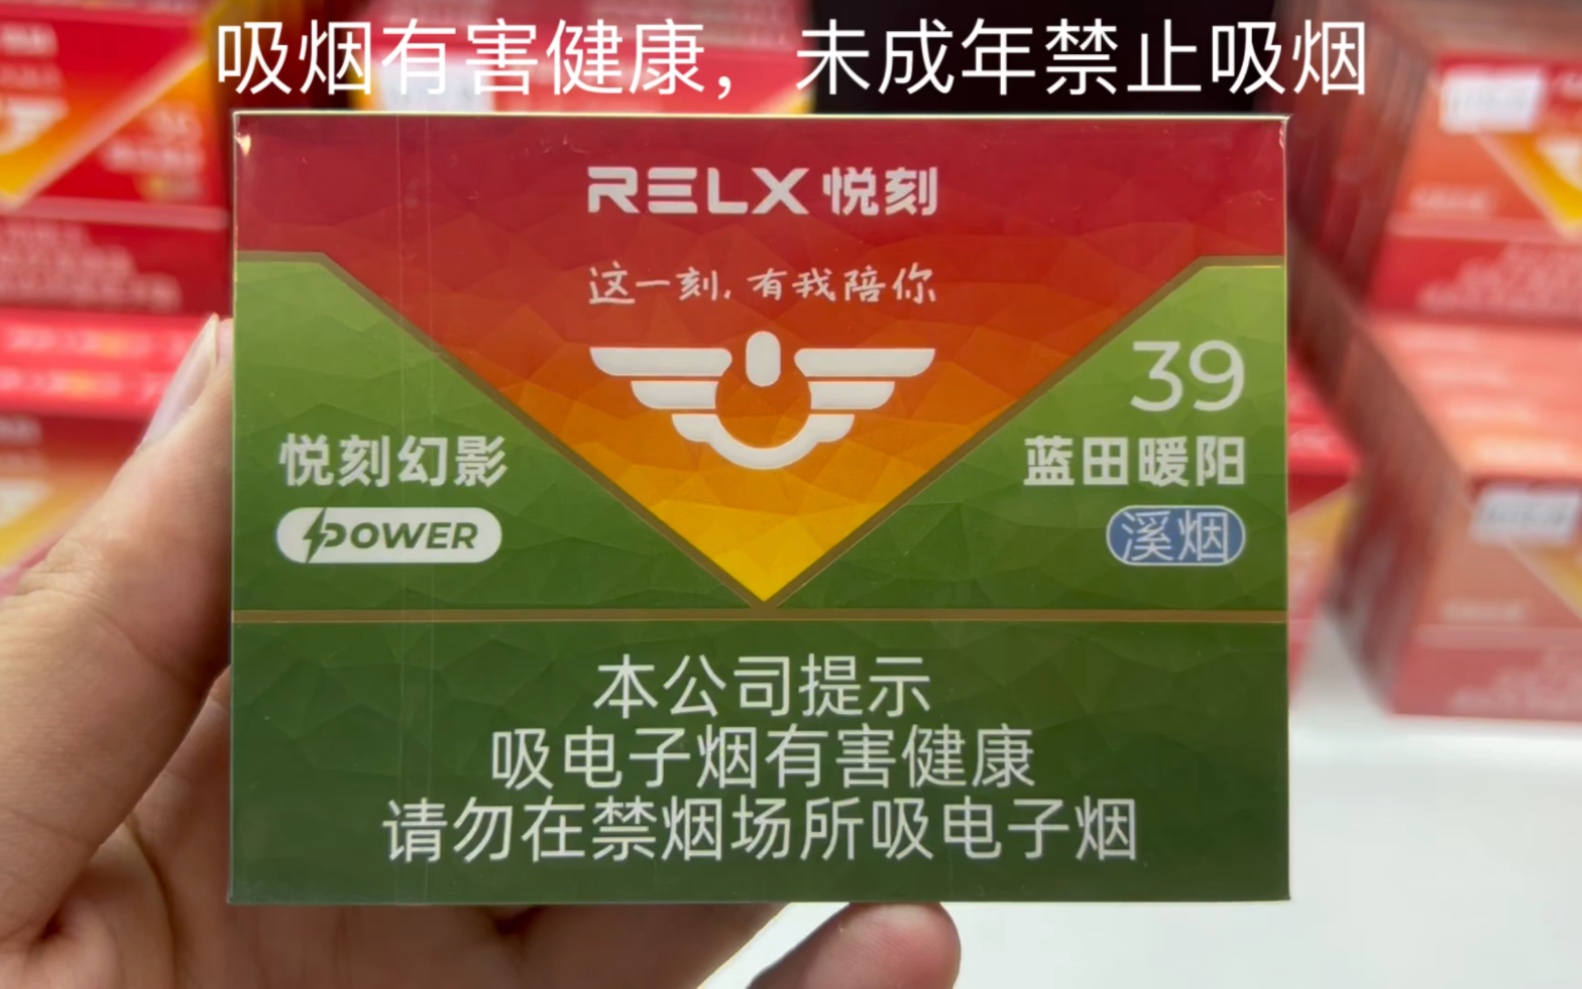 relx悦刻国标烟弹幻影power 蓝田暖阳溪烟39,烟韵均衡,带有清新的烘培